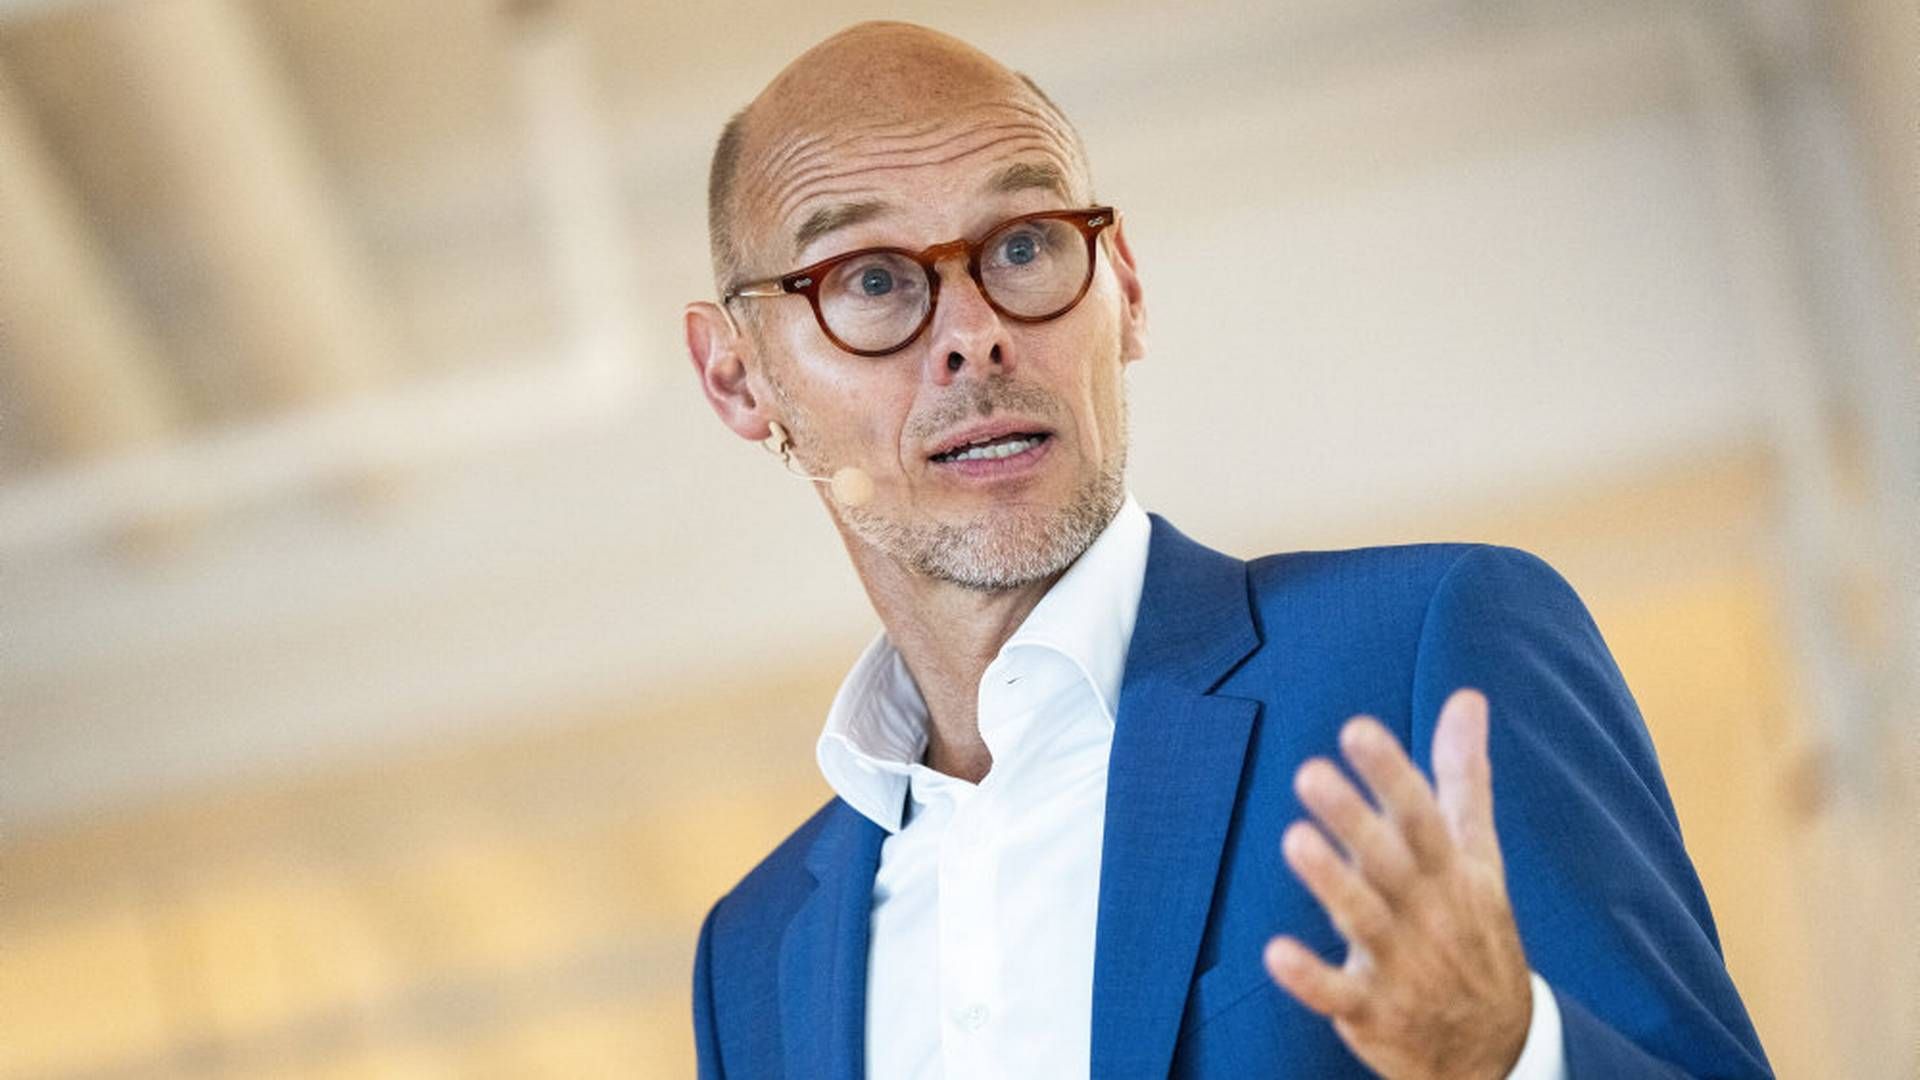 Auktionshuset Bruun Rasmussen skal have ny direktør, efter Jakob Dupont har forladt sin stilling. | Foto: Ida Marie Odgaard/Ritzau Scanpix